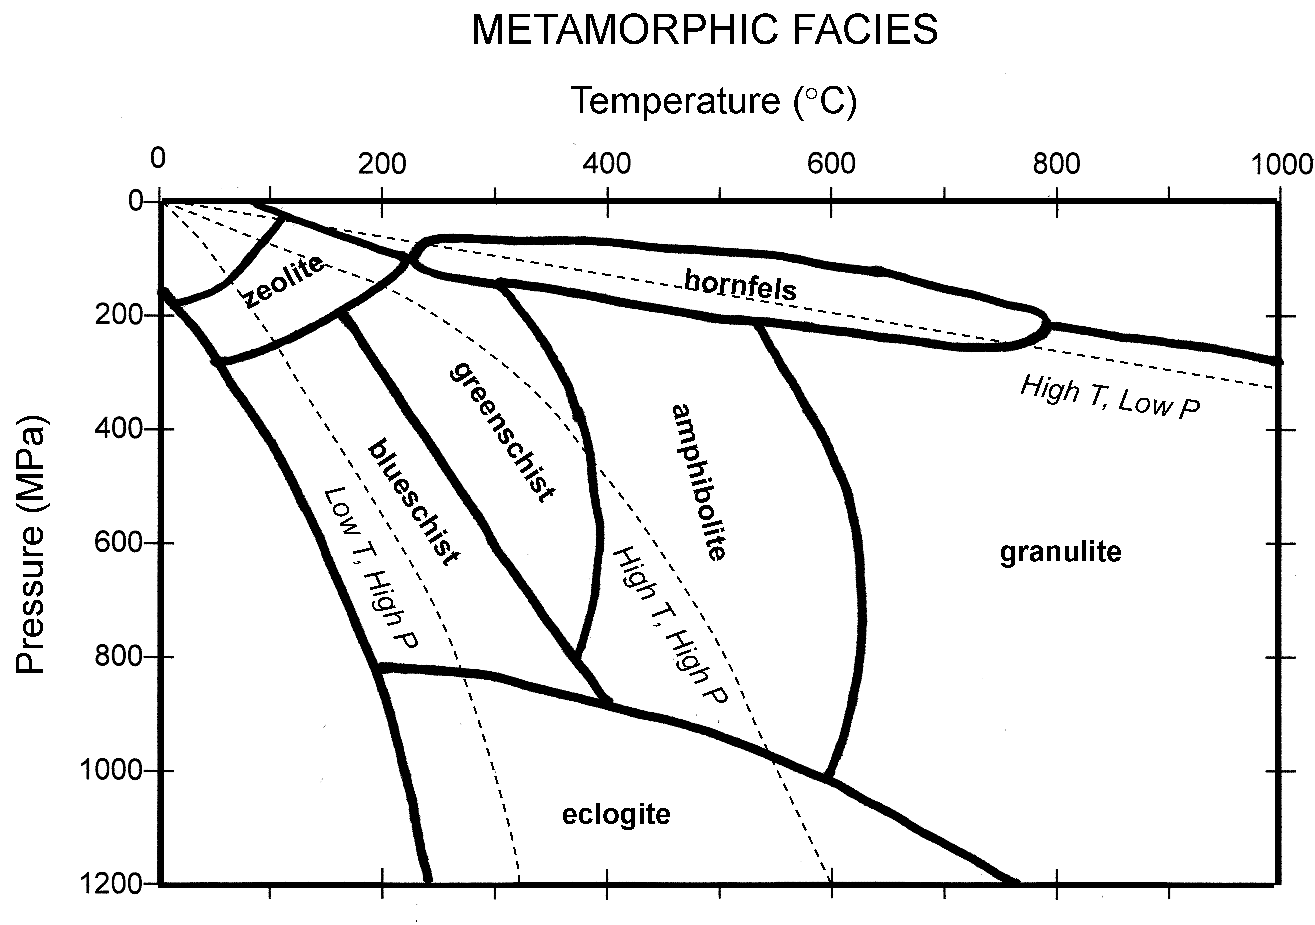 pressure-temperature diagram showing metamorphic facies